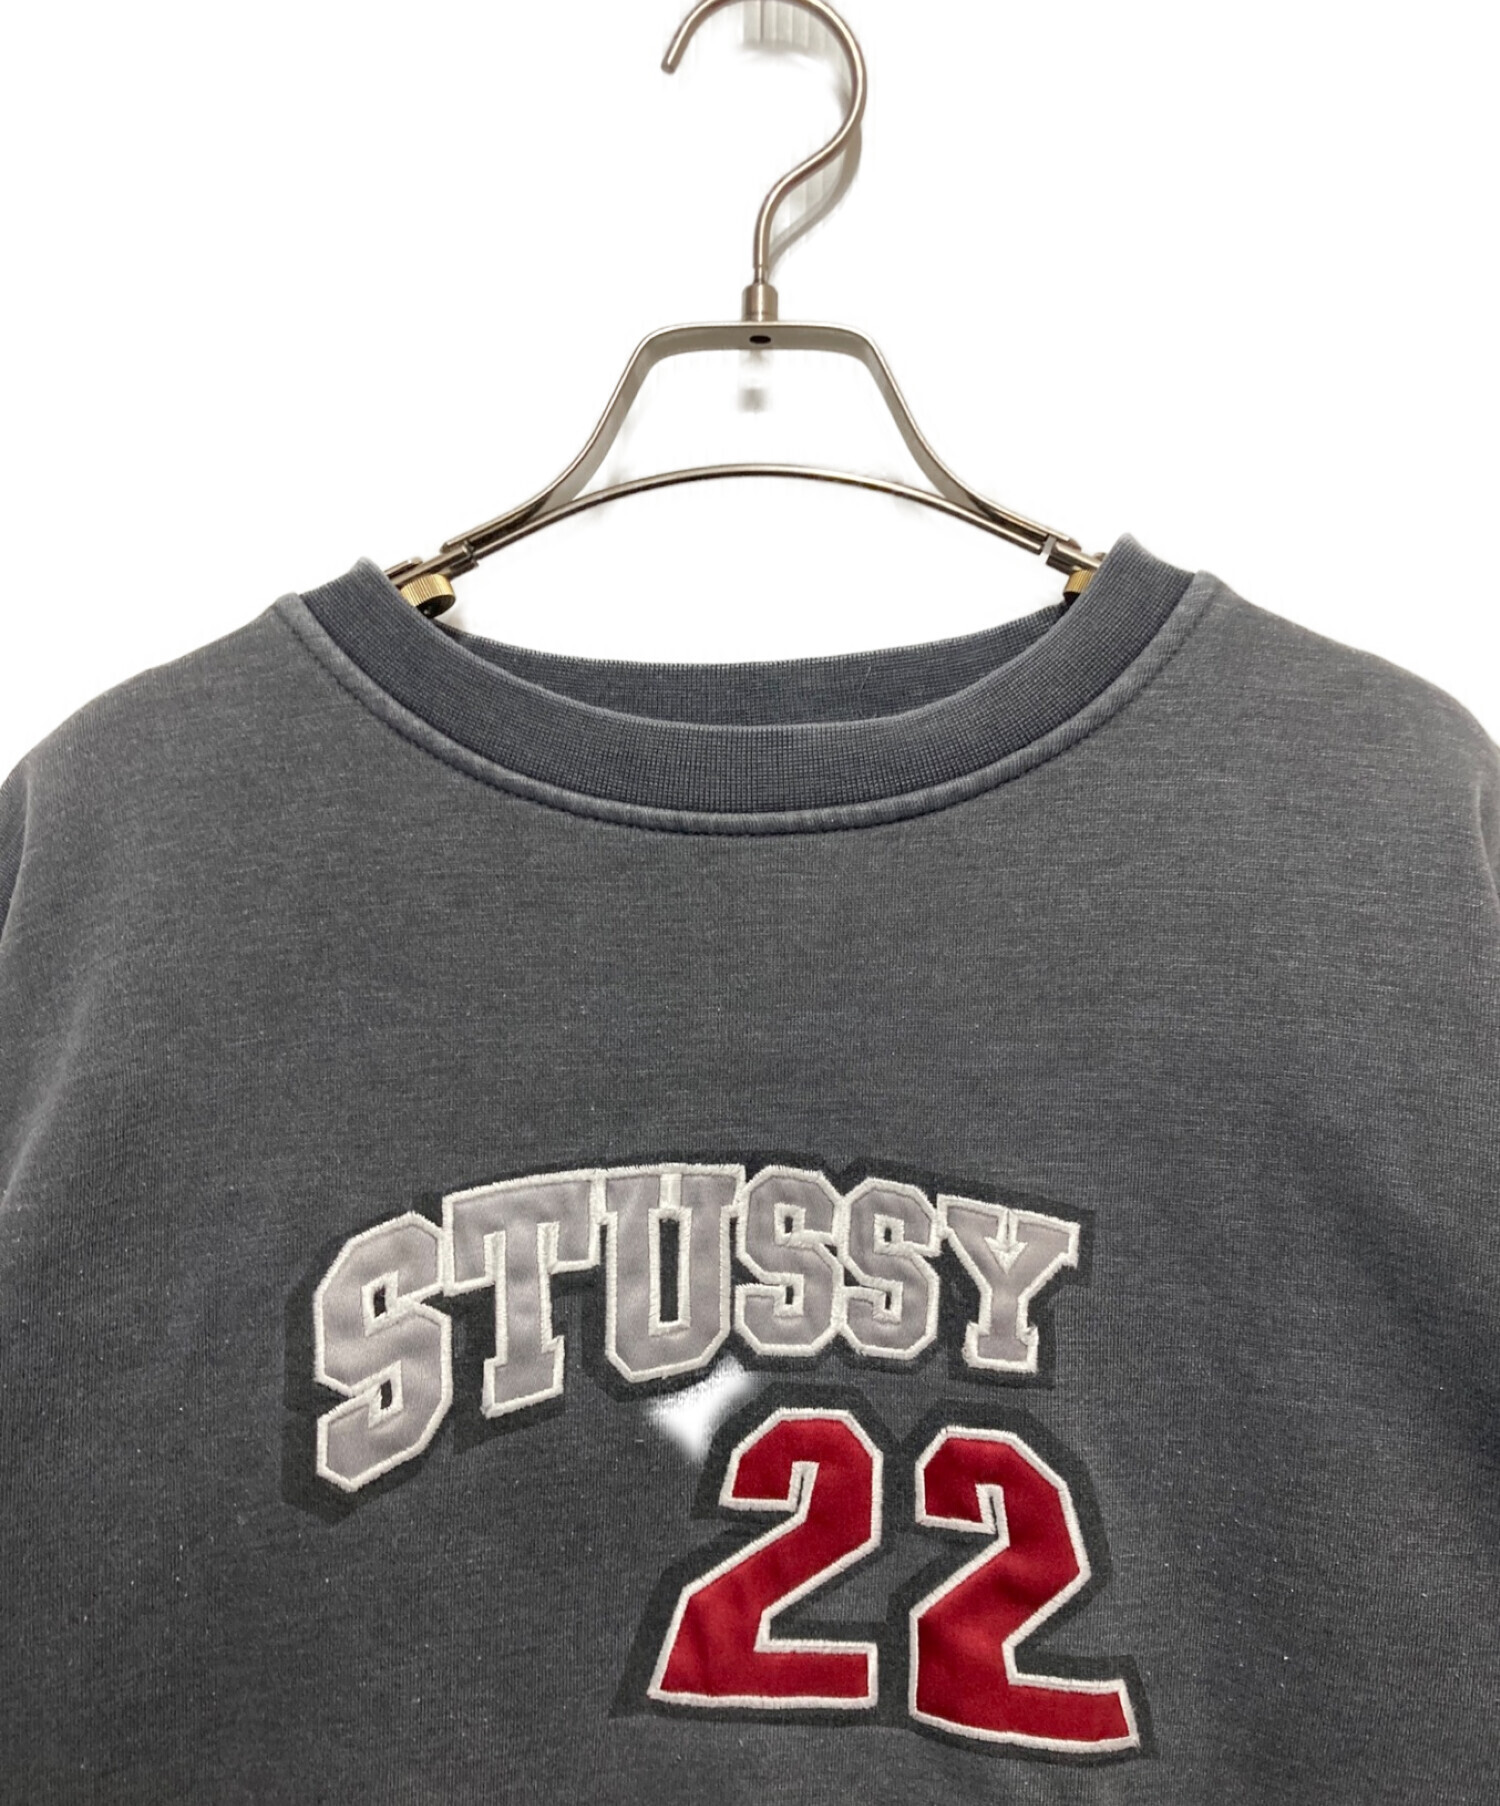 stussy (ステューシー) 90sロゴ刺繍スウェット グレー サイズ:L